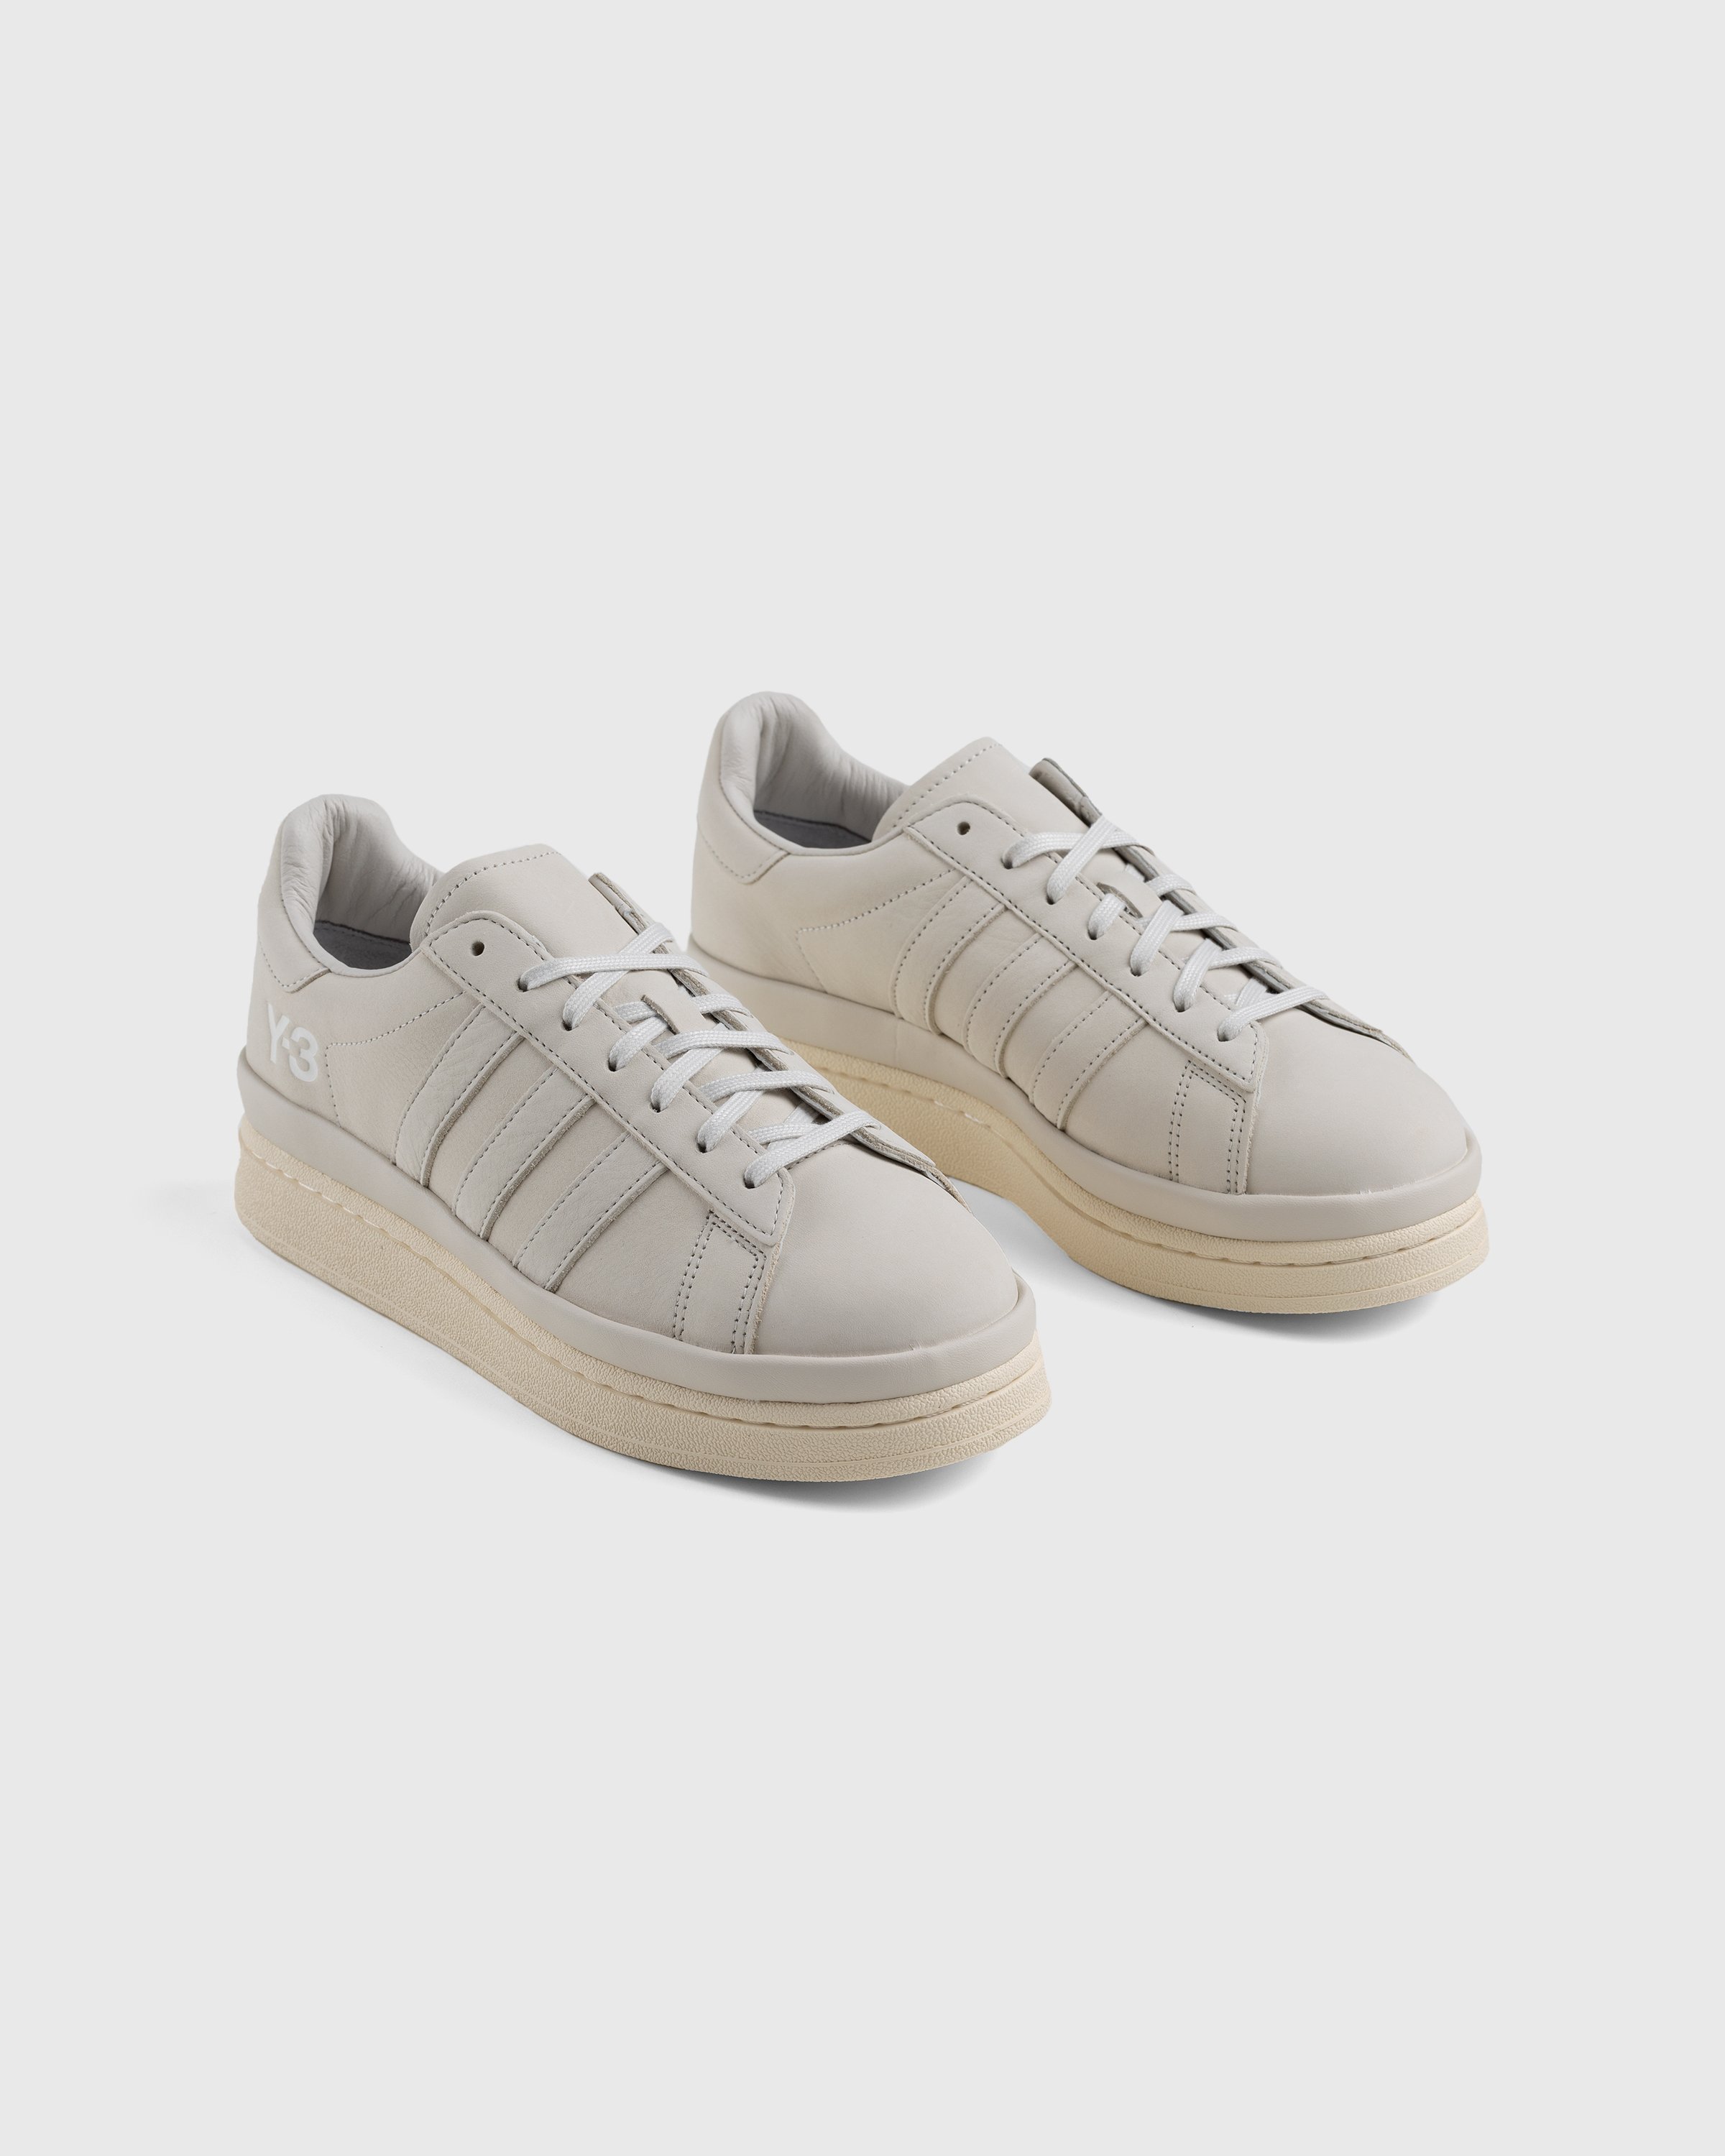 Y-3 - Hicho Grey/Cream - Footwear - White - Image 4